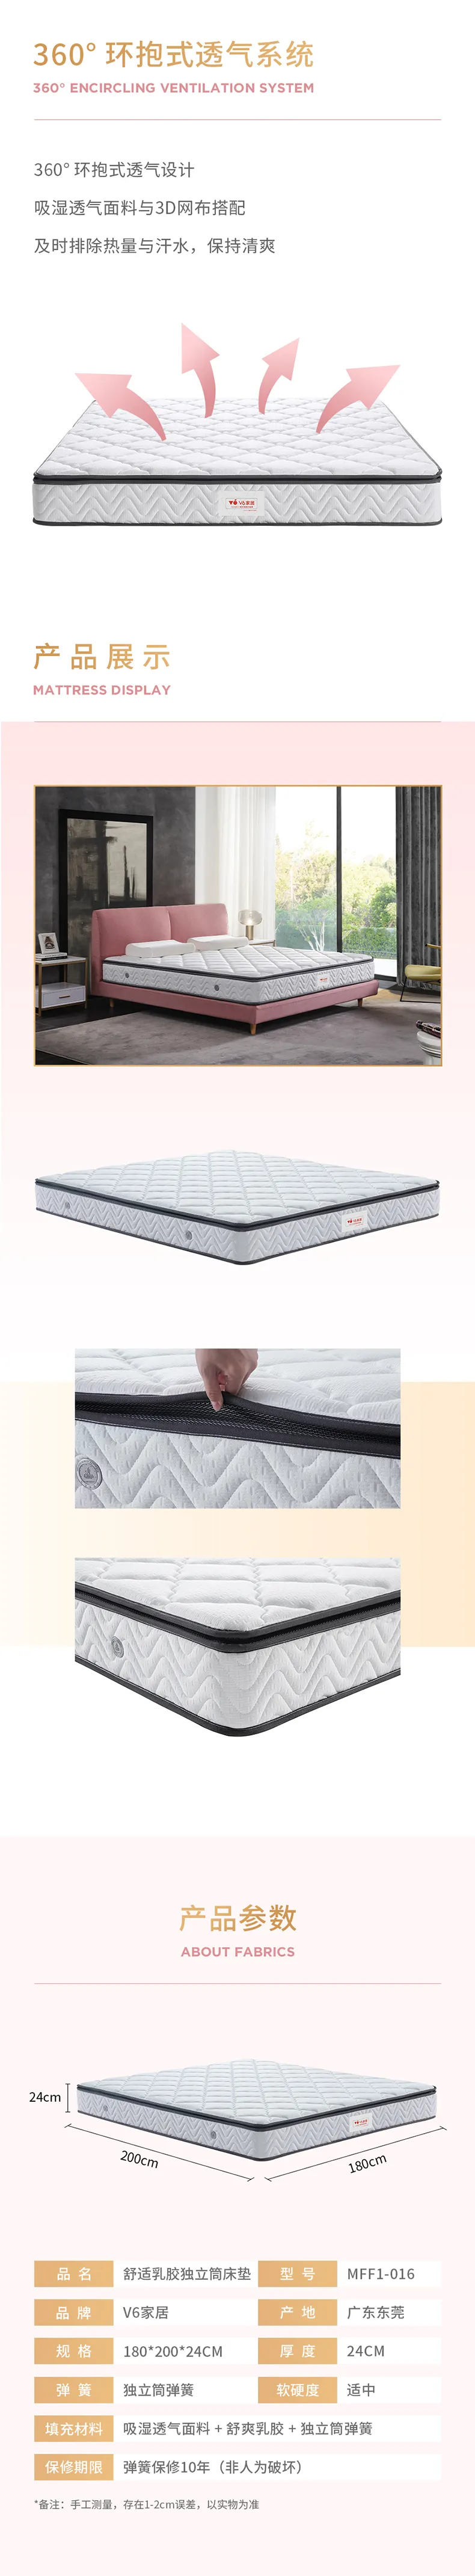 慕思集团 时尚品牌V6家居舒适乳胶独立筒床垫 MFF1-016(图3)